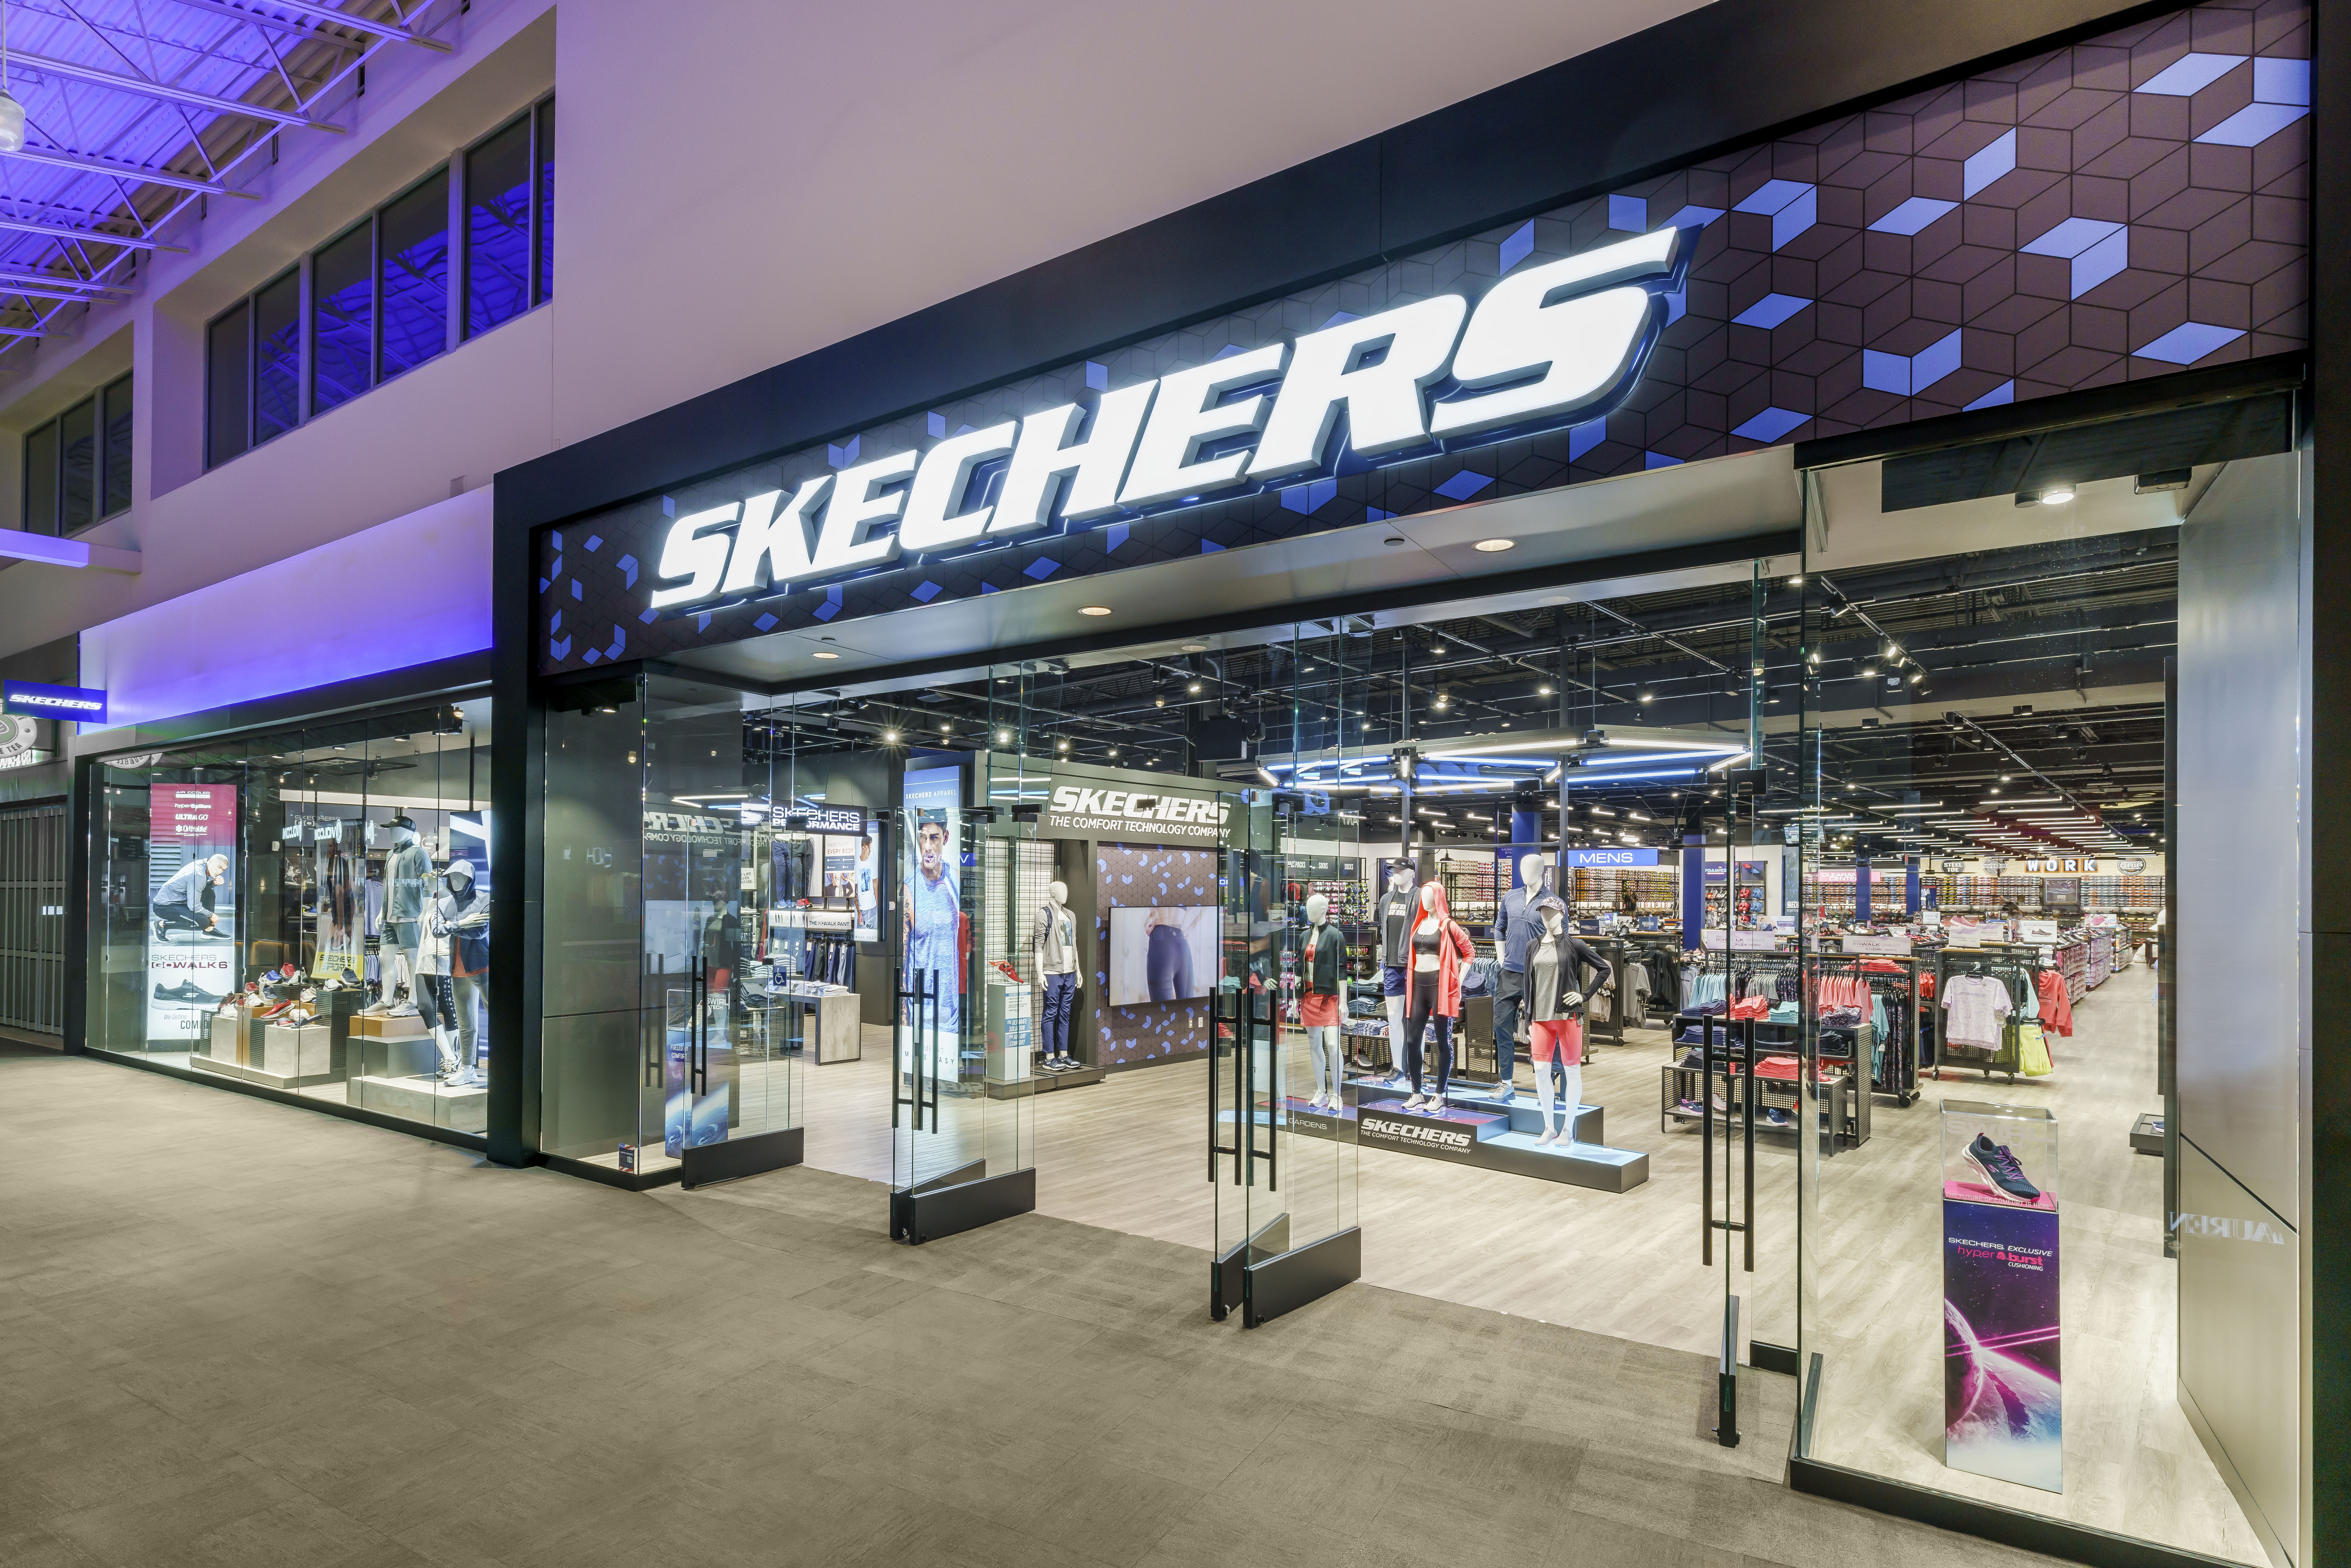 kompliceret jug Udøve sport Skechers Opens Superstore in New Jersey | Business Wire